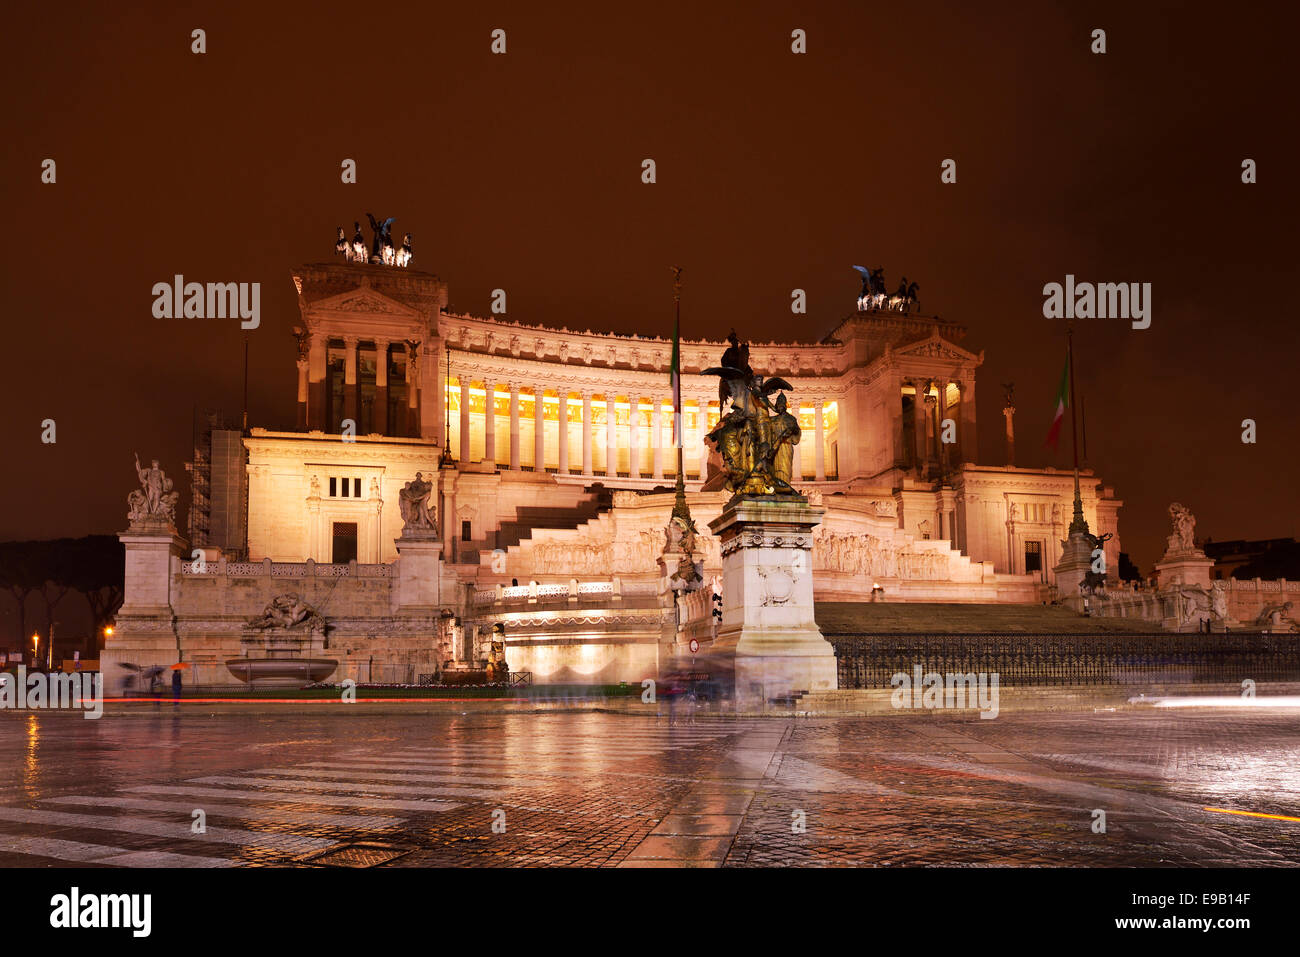 Emmanuel, National Monument de Victor Emmanuel II, la Place de Venise, Rome, Italie Banque D'Images